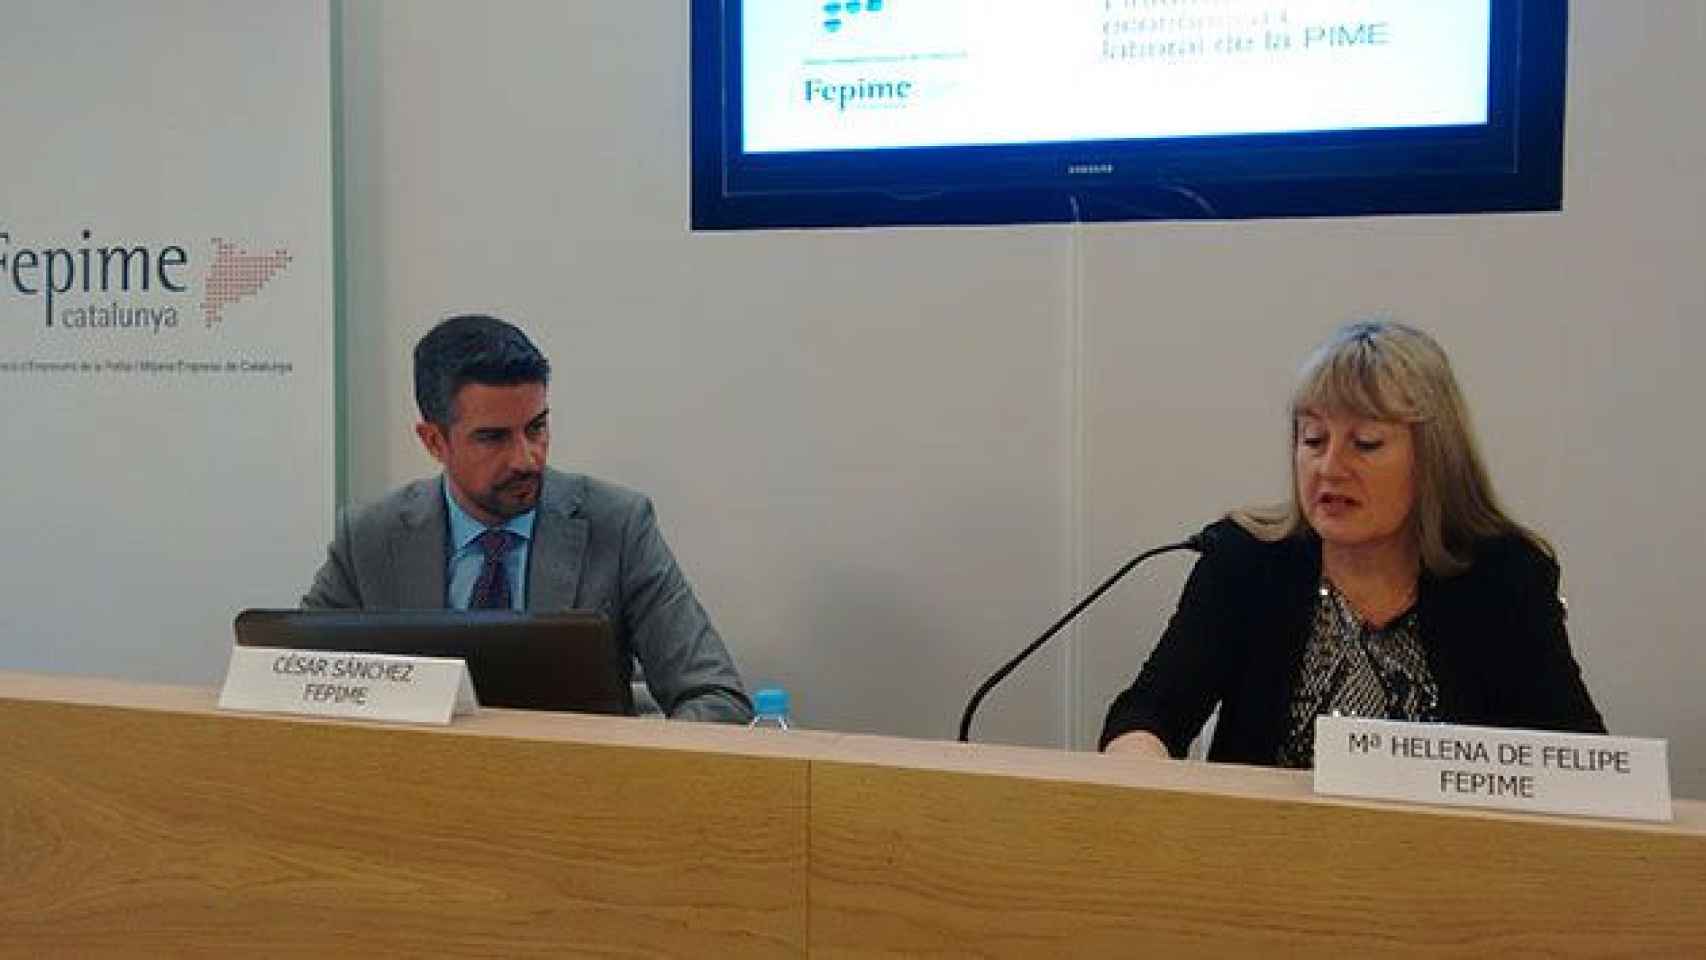 César Sánchez, secretario general de Fepime, y María Helena de Felipe, presidenta de la patronal de pymes, en la presentación de un estudio / CG